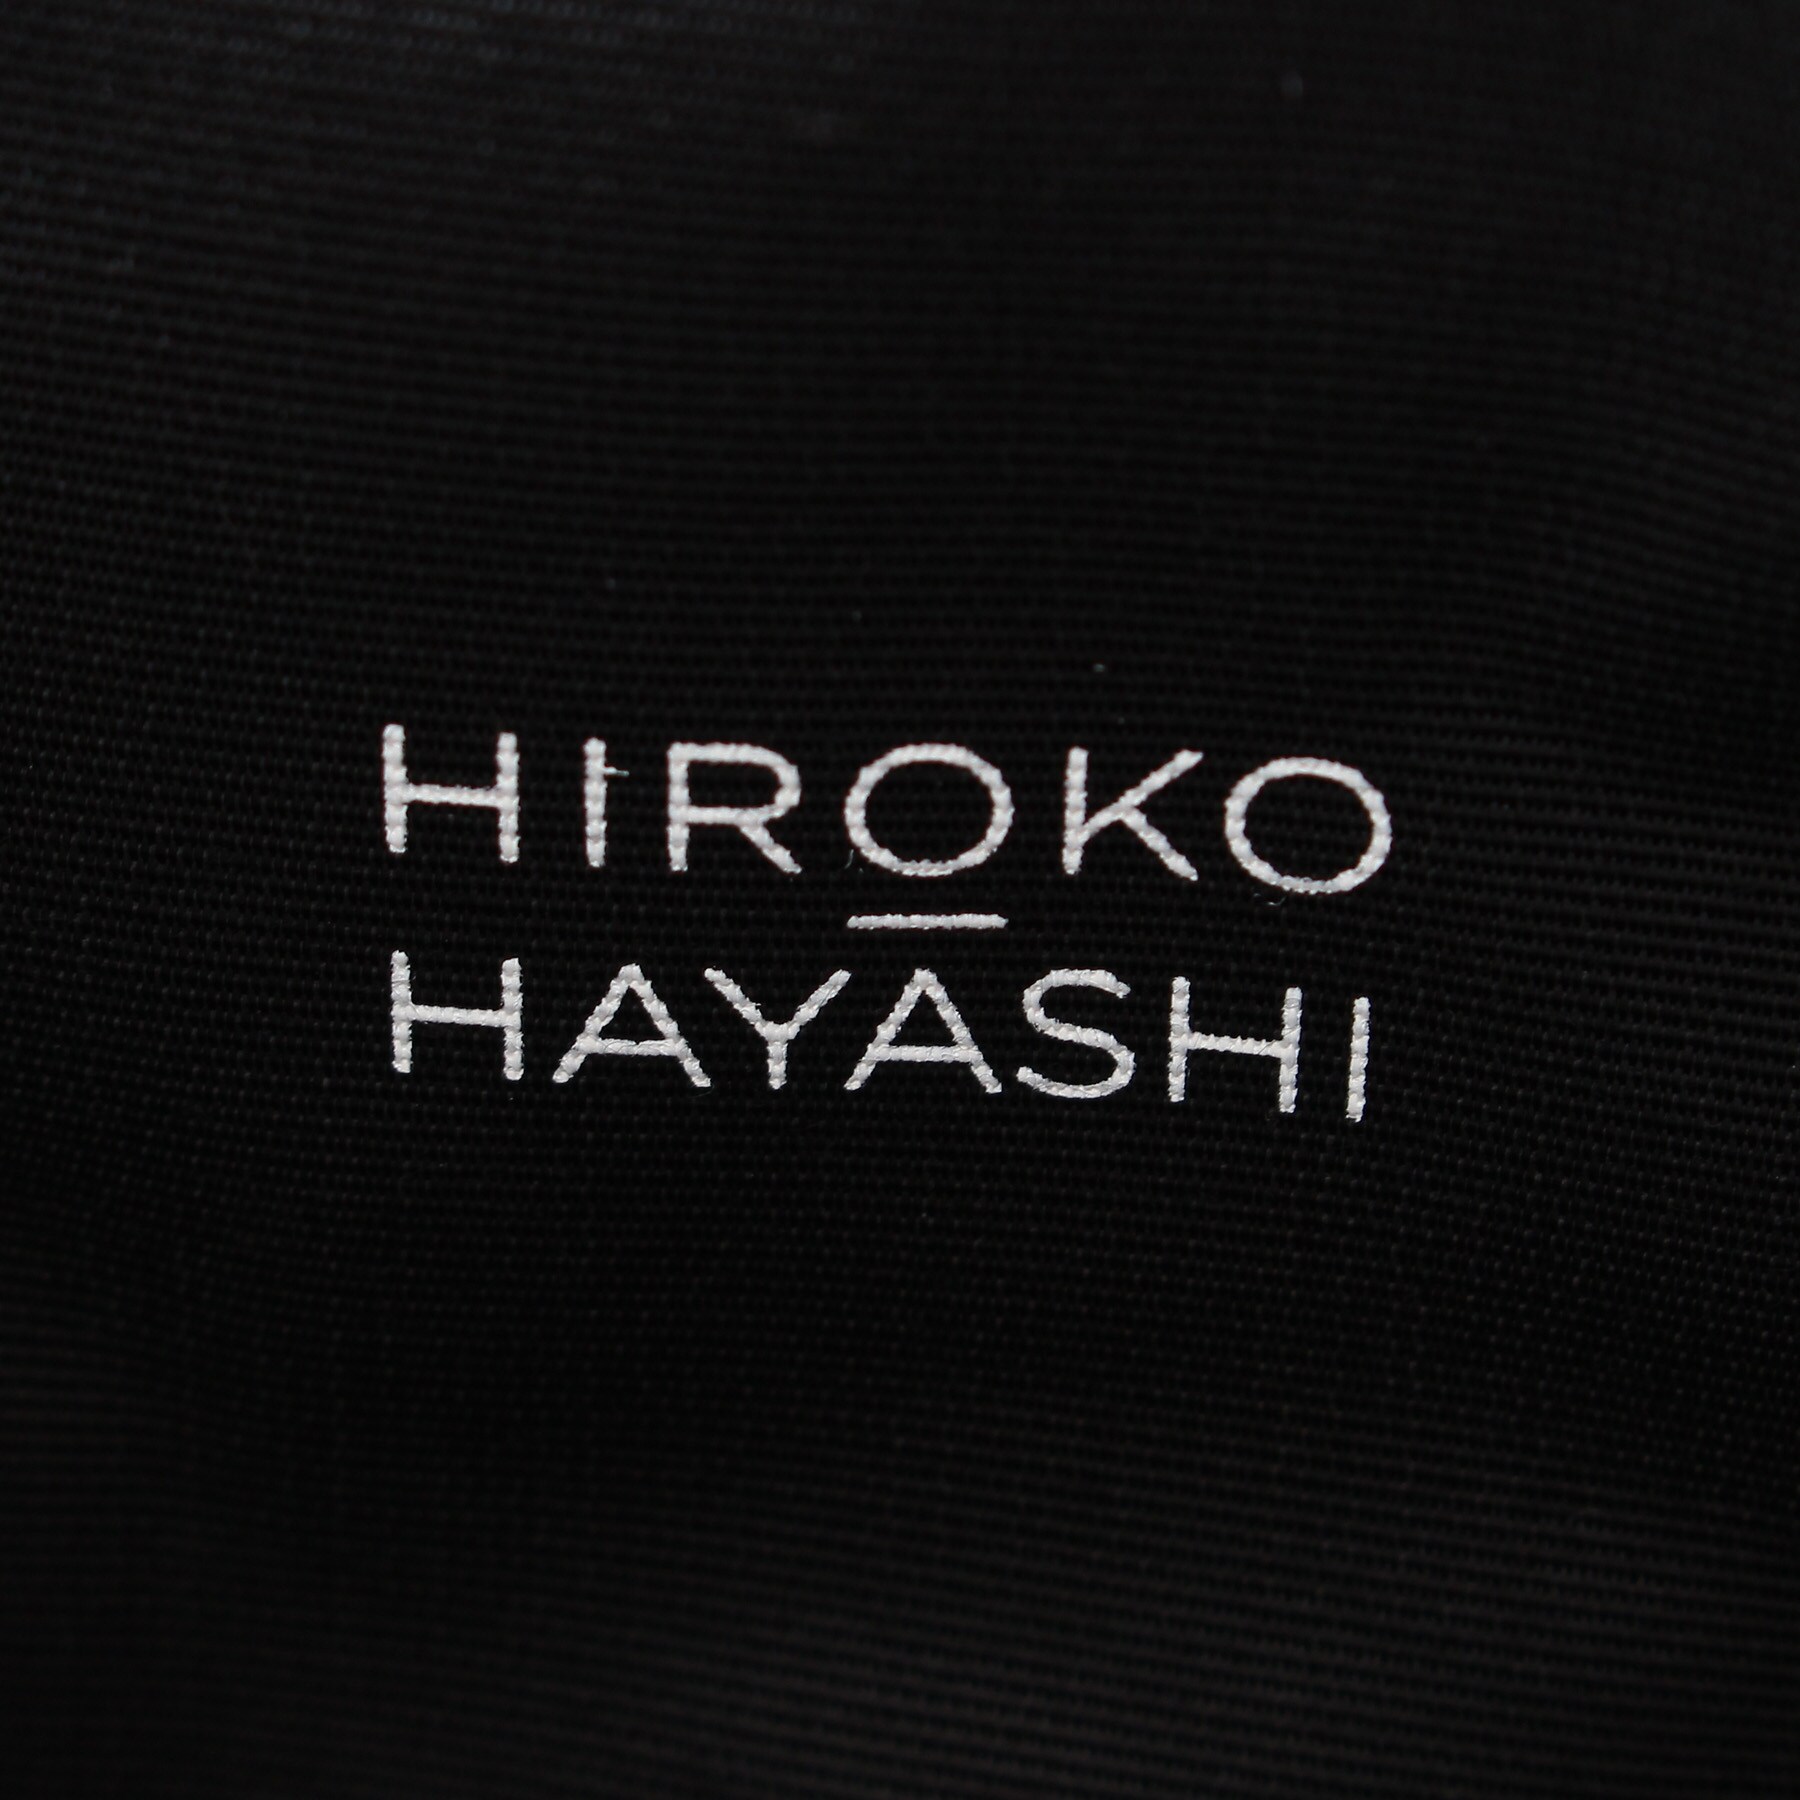 ヒロコ ハヤシ(HIROKO HAYASHI)のMONTE(モンテ) ショルダーバッグL6